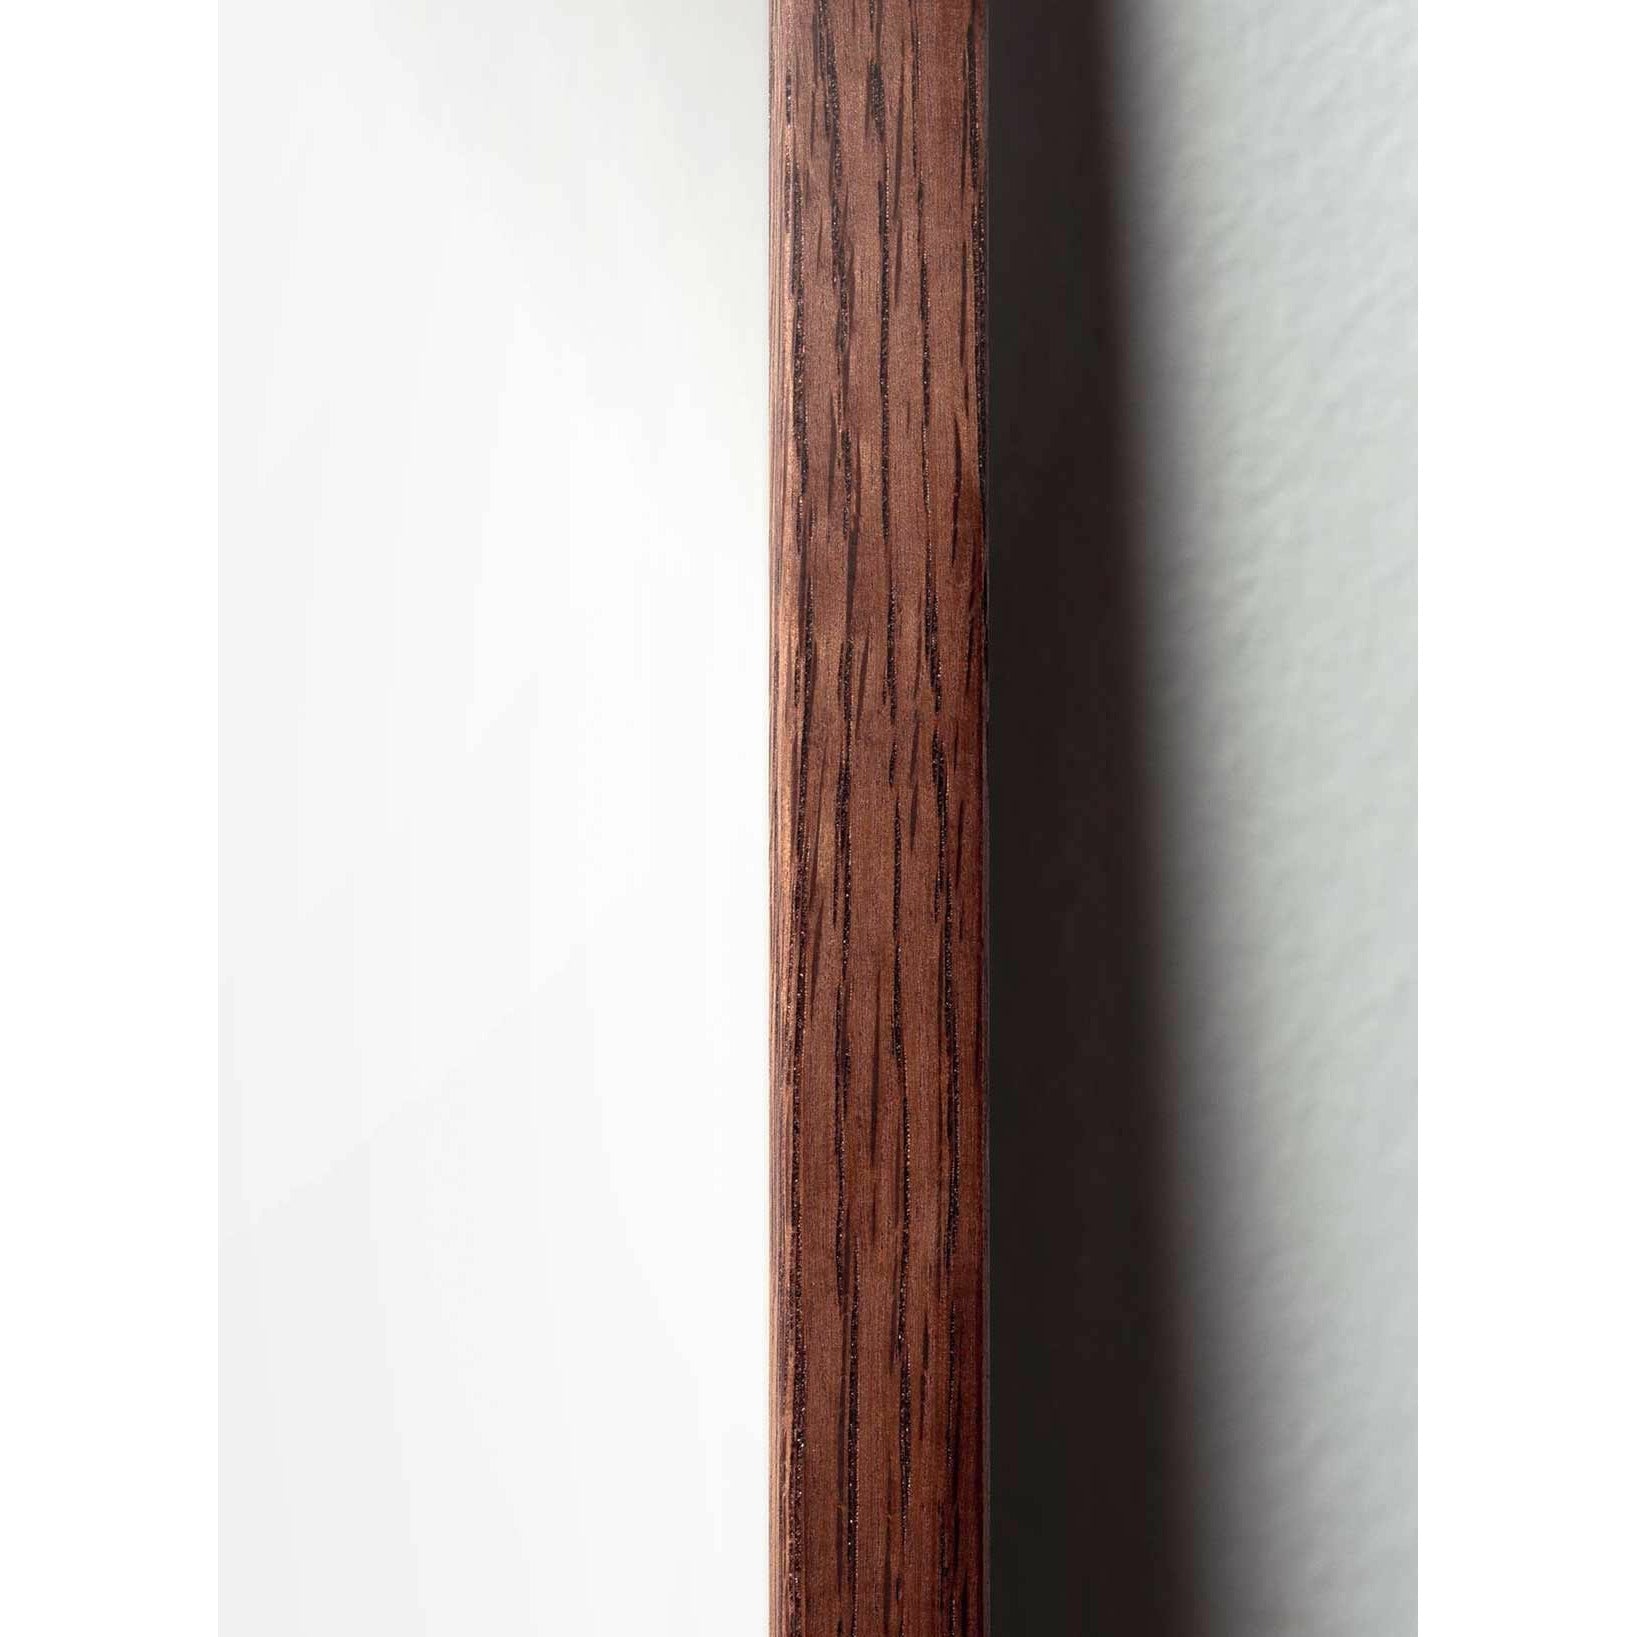 Póster de línea de cono de pino de creación, marco hecho de madera oscura de 70x100 cm, fondo azul